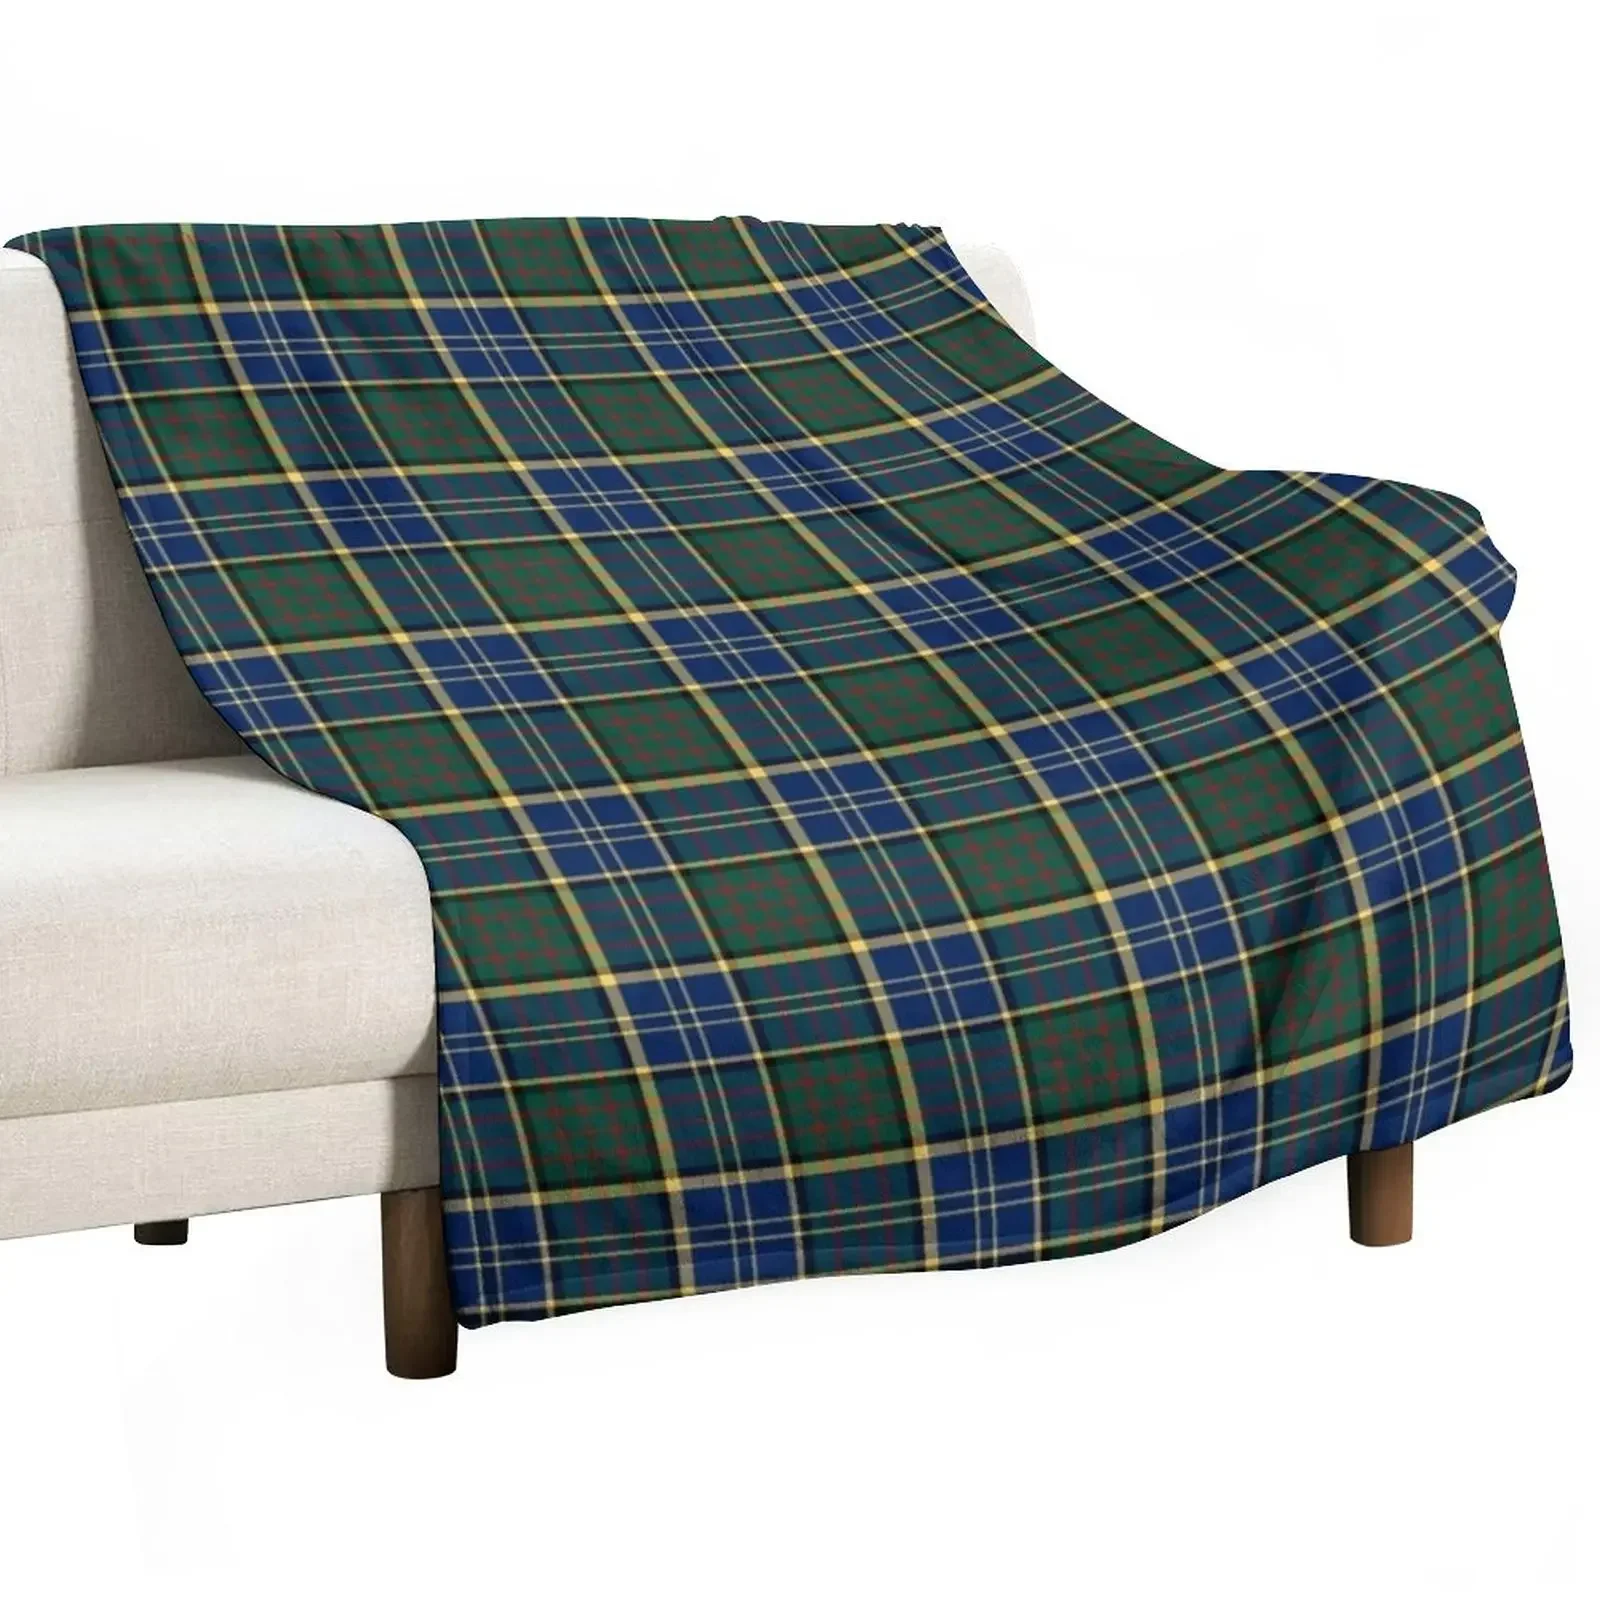 

Охотничье Клетчатое одеяло Clan MacMillan, полярные декоративные диваны, одеяла